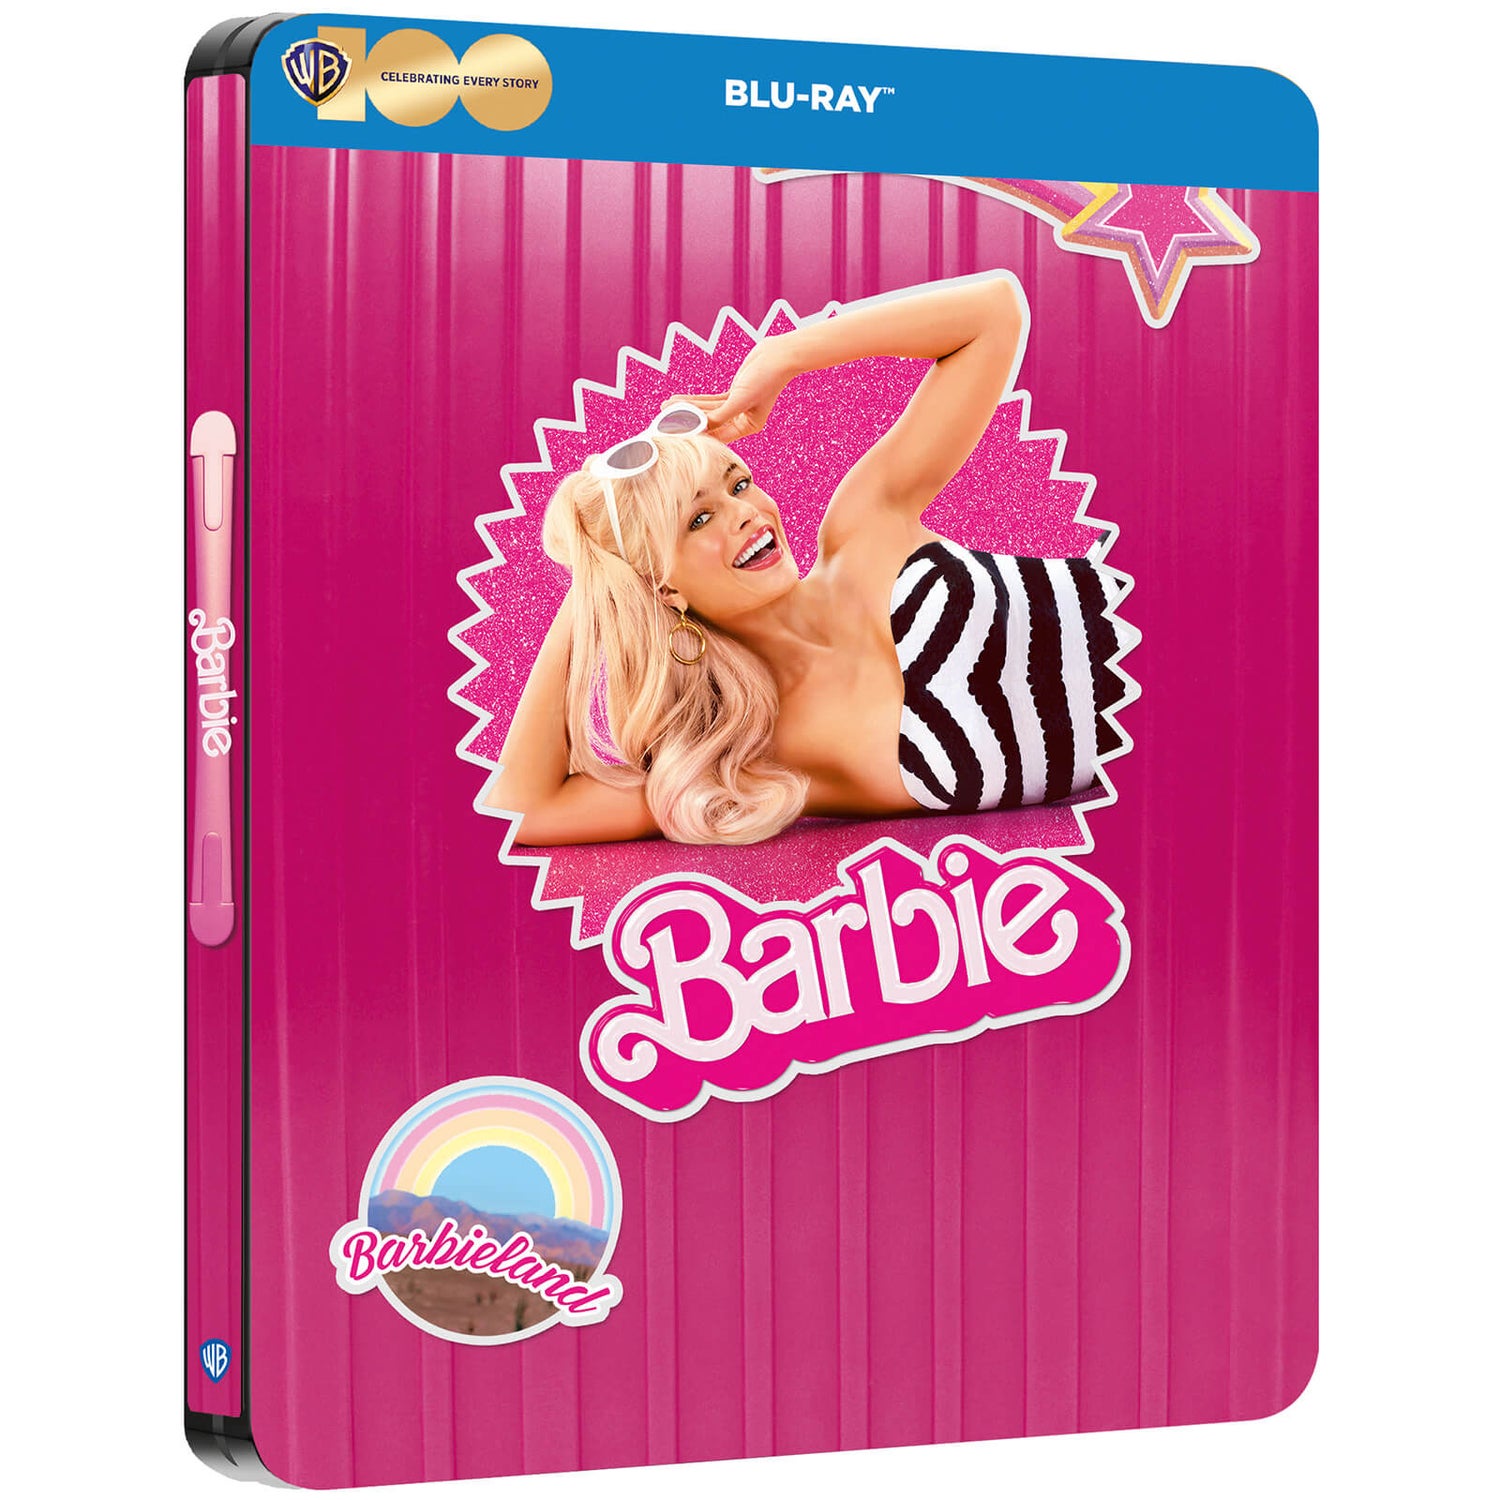 💗 Barbie Blu-ray Steelbook 💗